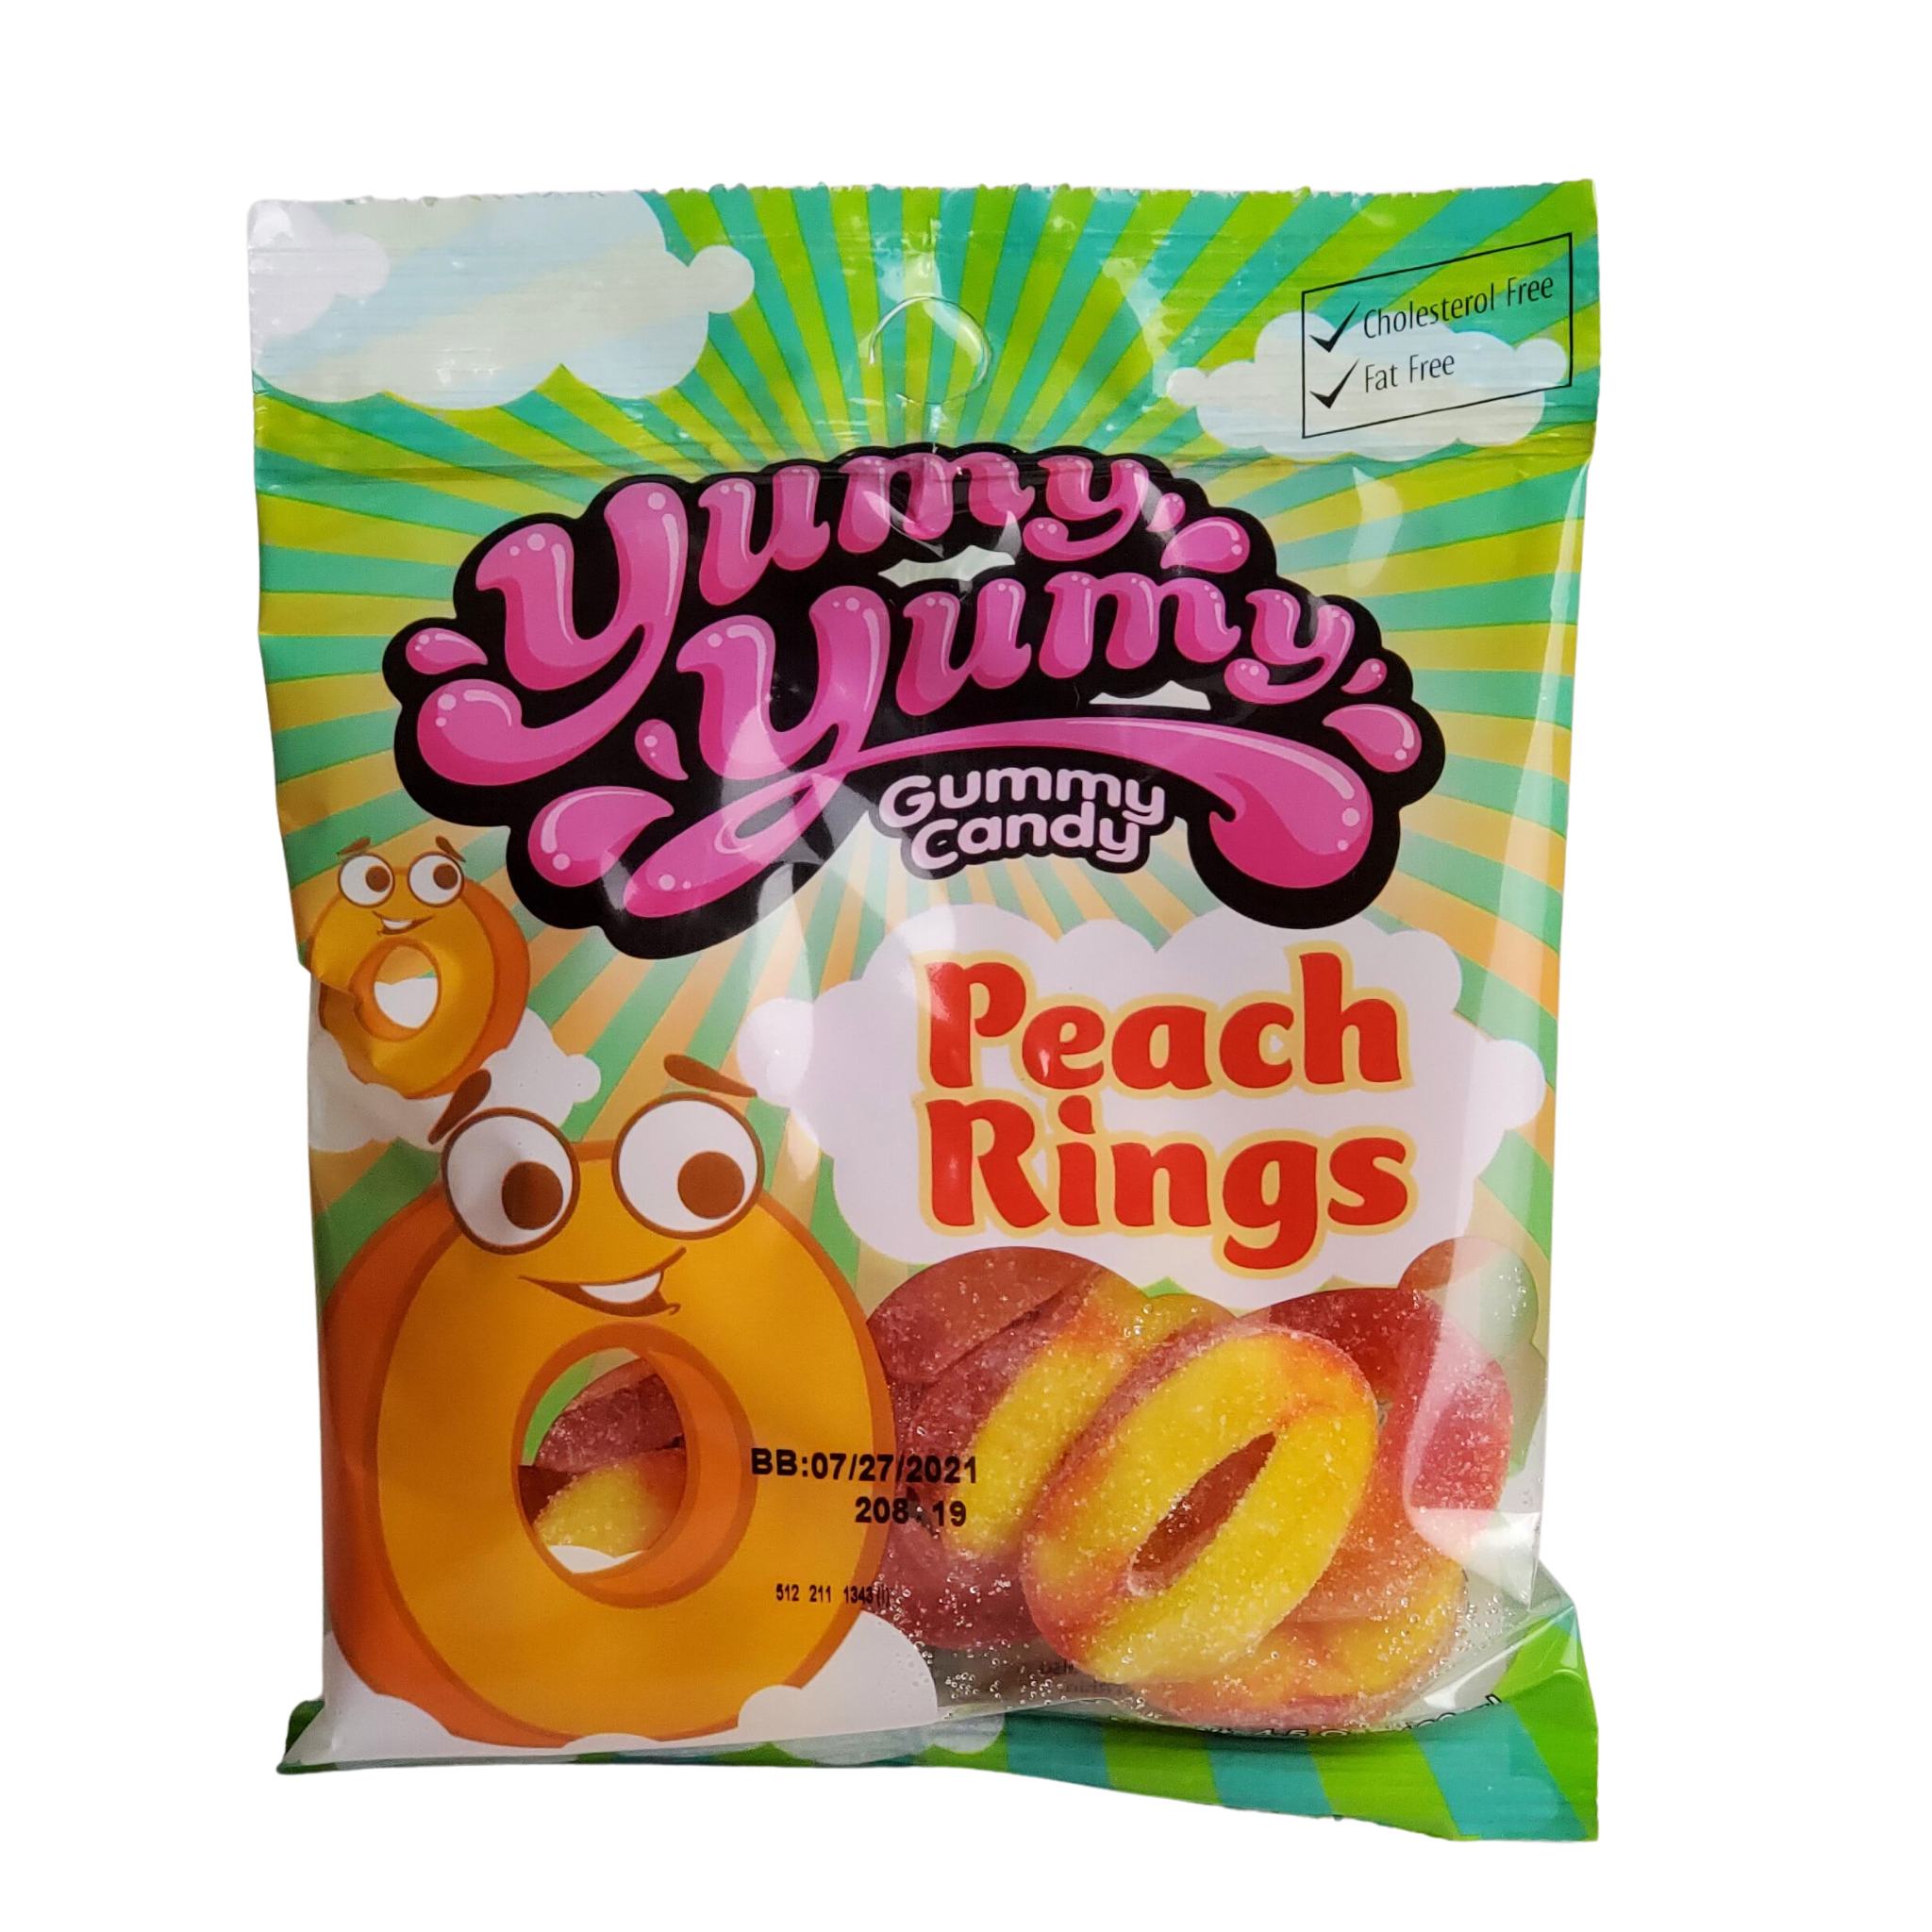 Yumy Yumy Gummy Candy Peach Rings